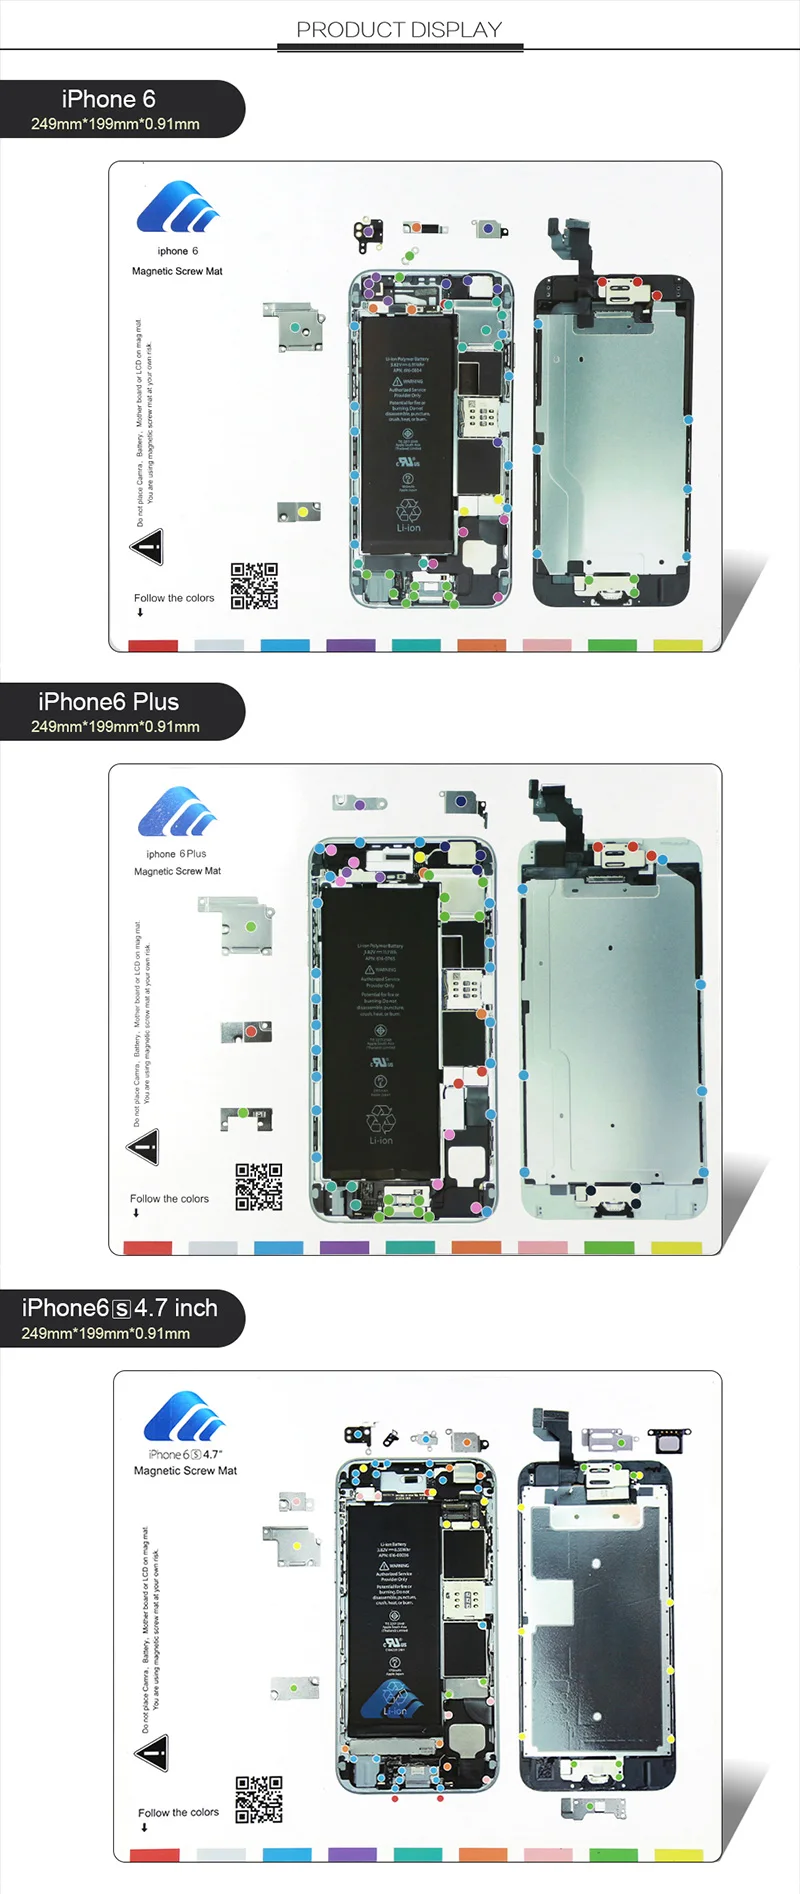 Профессиональный Магнитный винт коврик для iPhone 4, 5, 6, 6s, 7, 8 Plus, X, XR, Xs, MAX, винтовая прокладка, держатель, диаграмма, руководство, коврик, инструменты для ремонта телефона